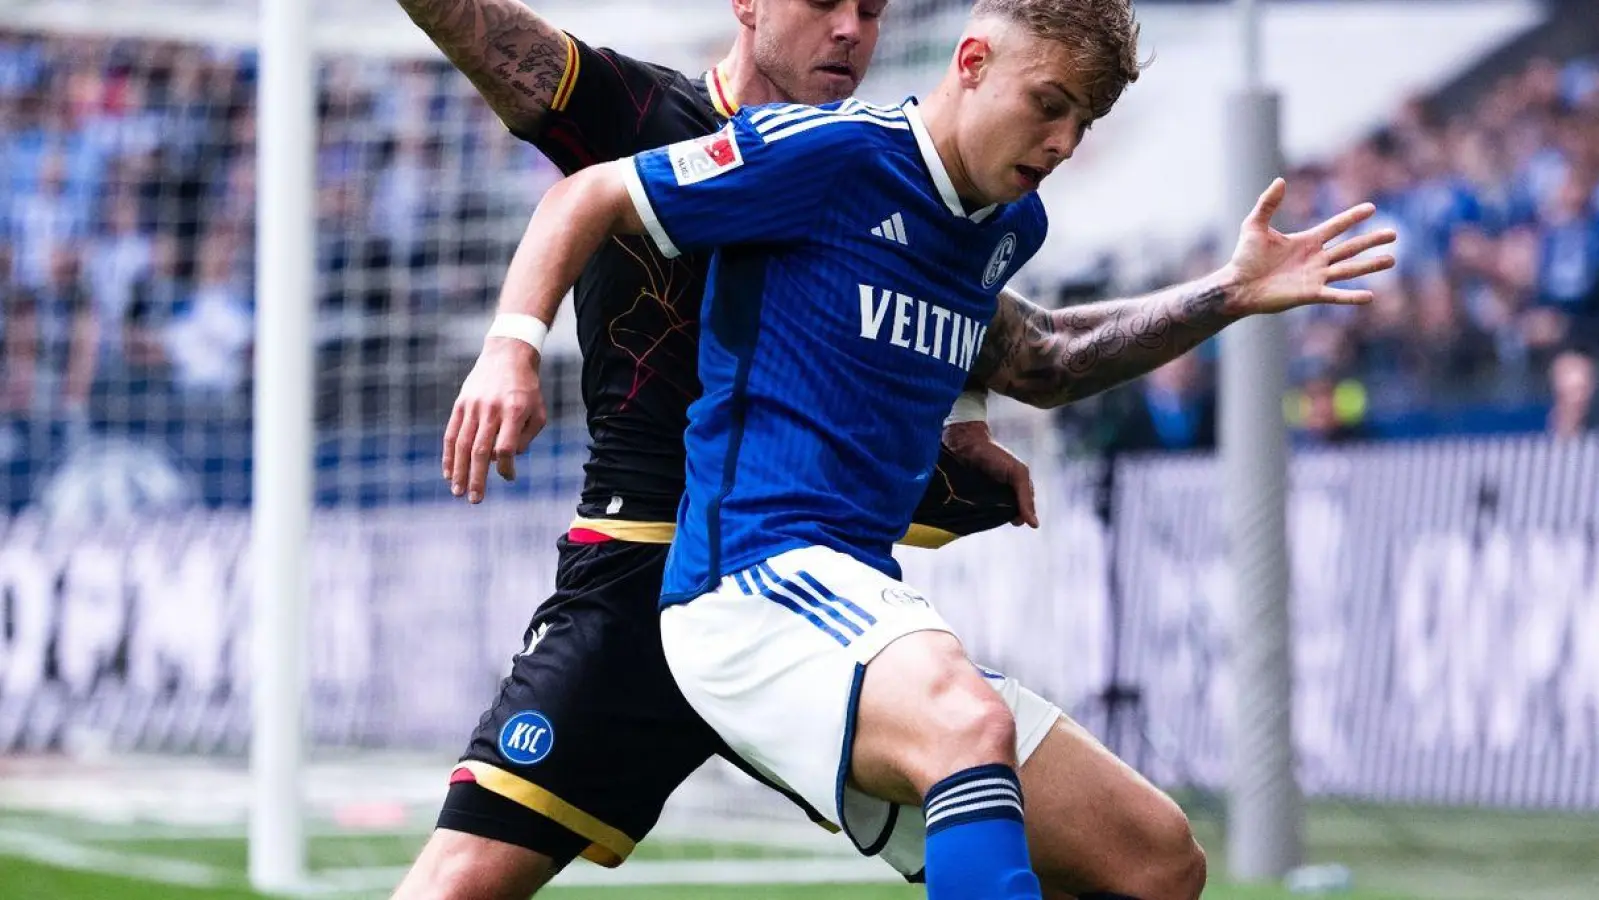 Schalkes Keke Topp (r) und Karlsruhes Marcel Franke kämpfen um den Ball. (Foto: Marius Becker/dpa)